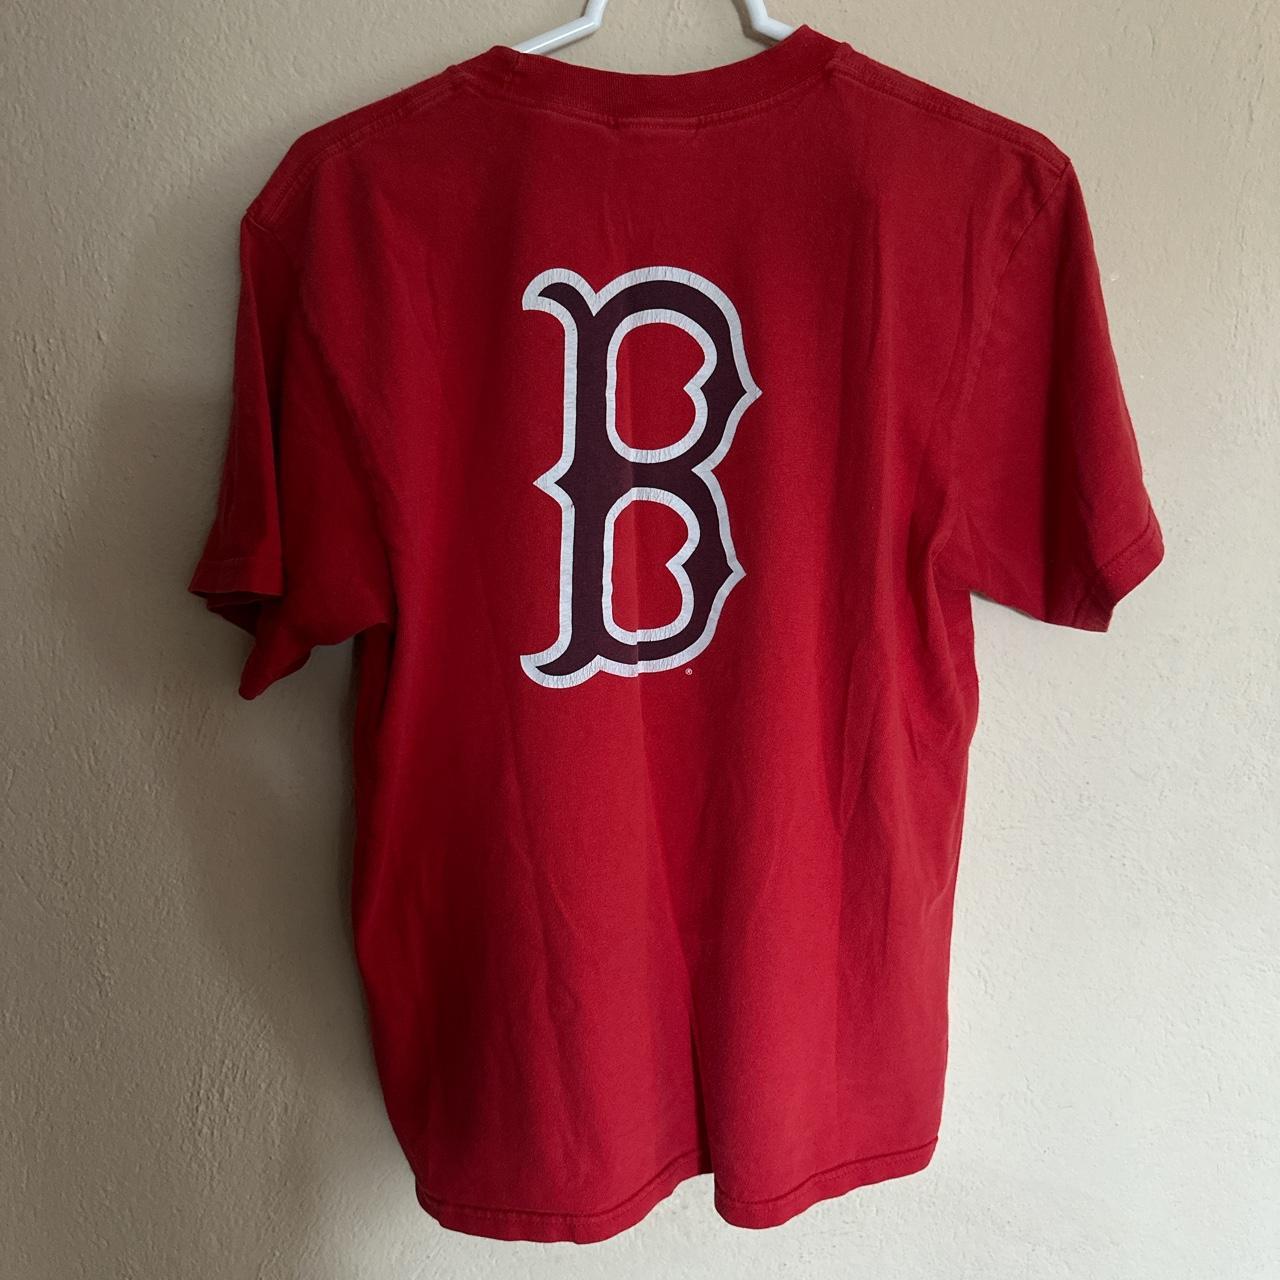 Vintage Nike Boston Red Sox tshirt. Vintage red - Depop